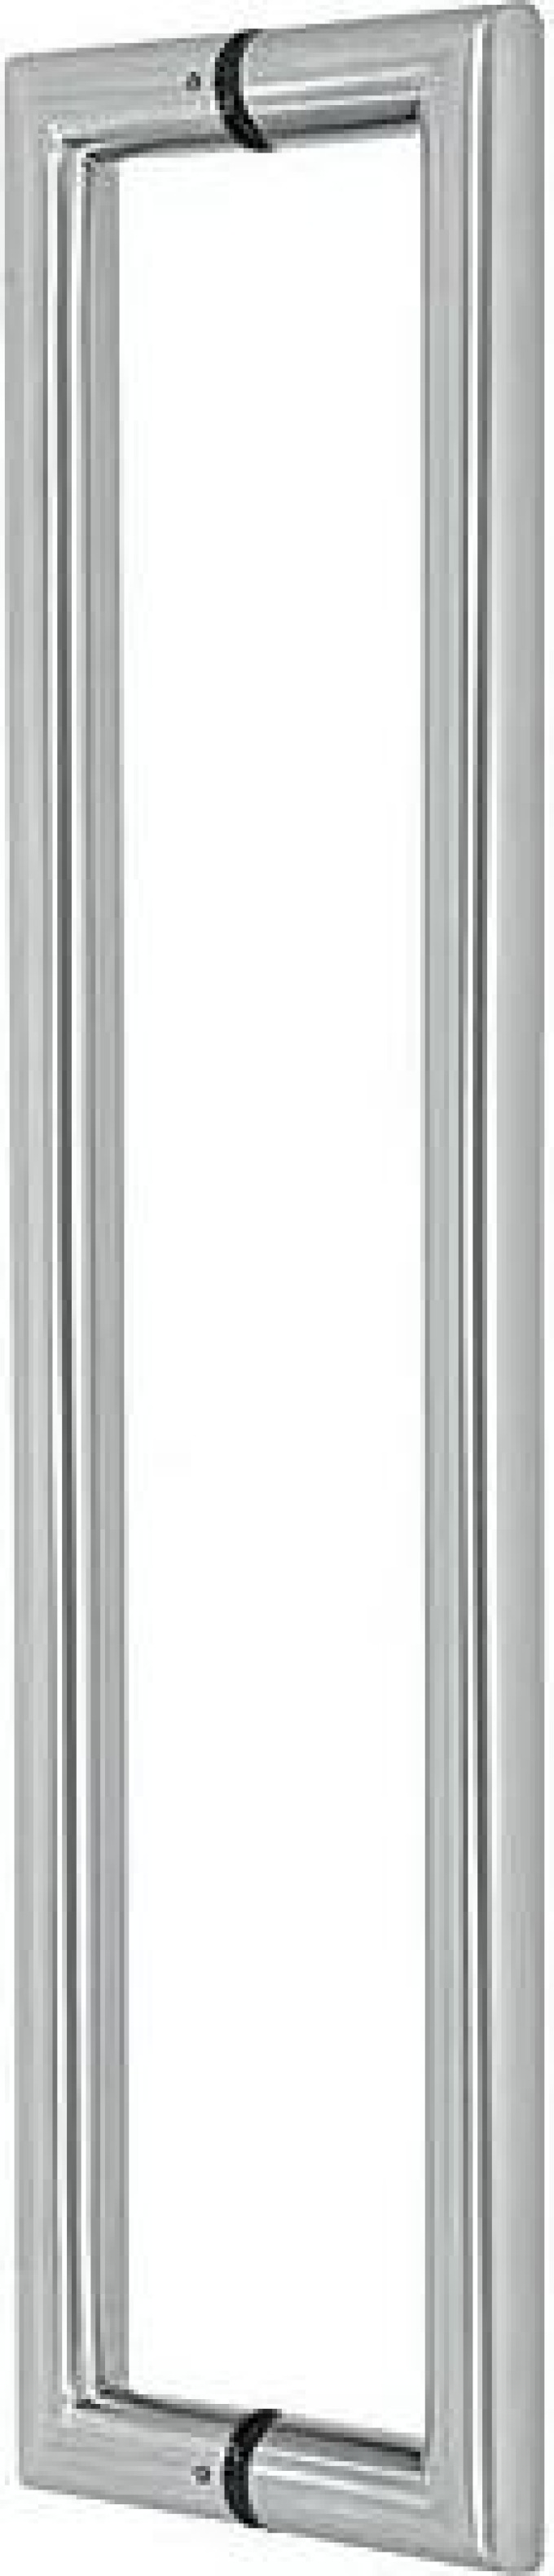 Madlo EUROLATON pro skleněné a dřevěné dveře - 82 (nerez), 455 x 425 x 80 (pár)